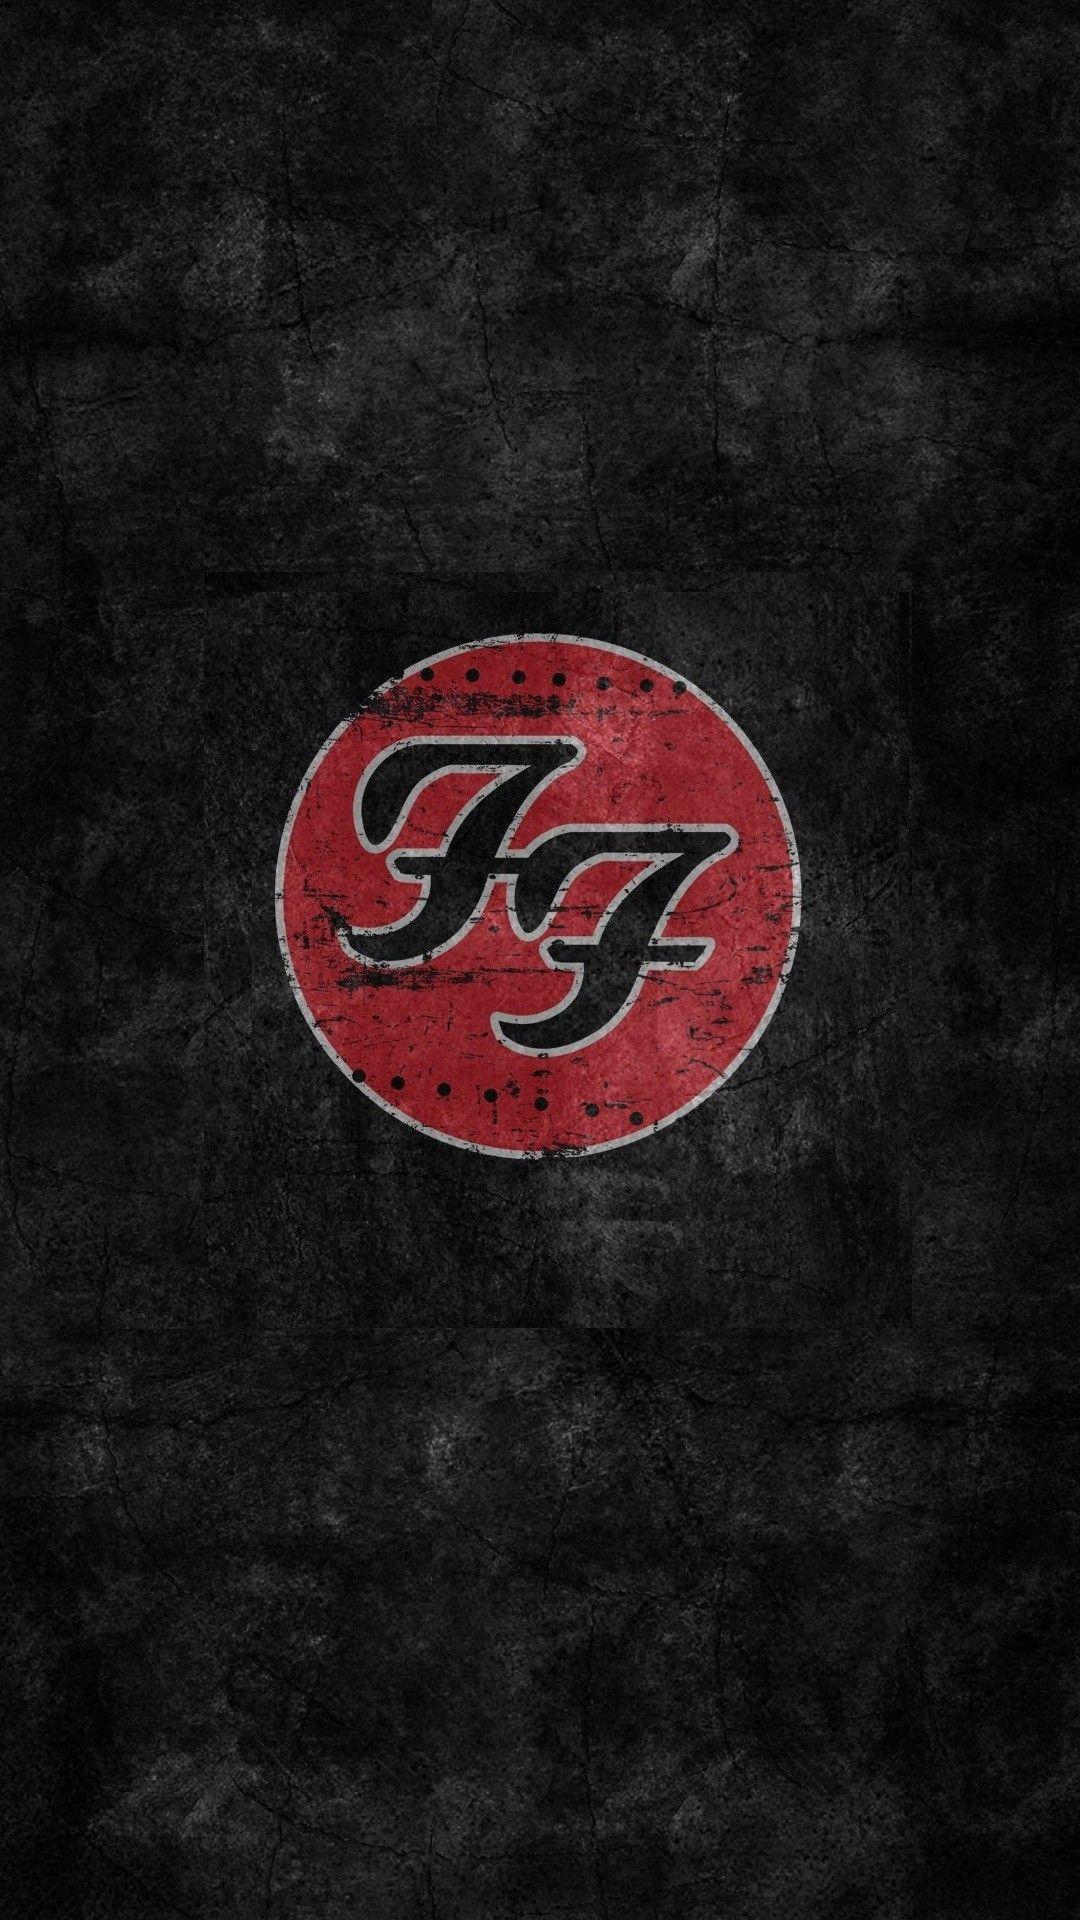 Foo Fighters Logo - HD Wallpaper Foo Fighters Logo | Music | Pinterest | Foo Fighters ...